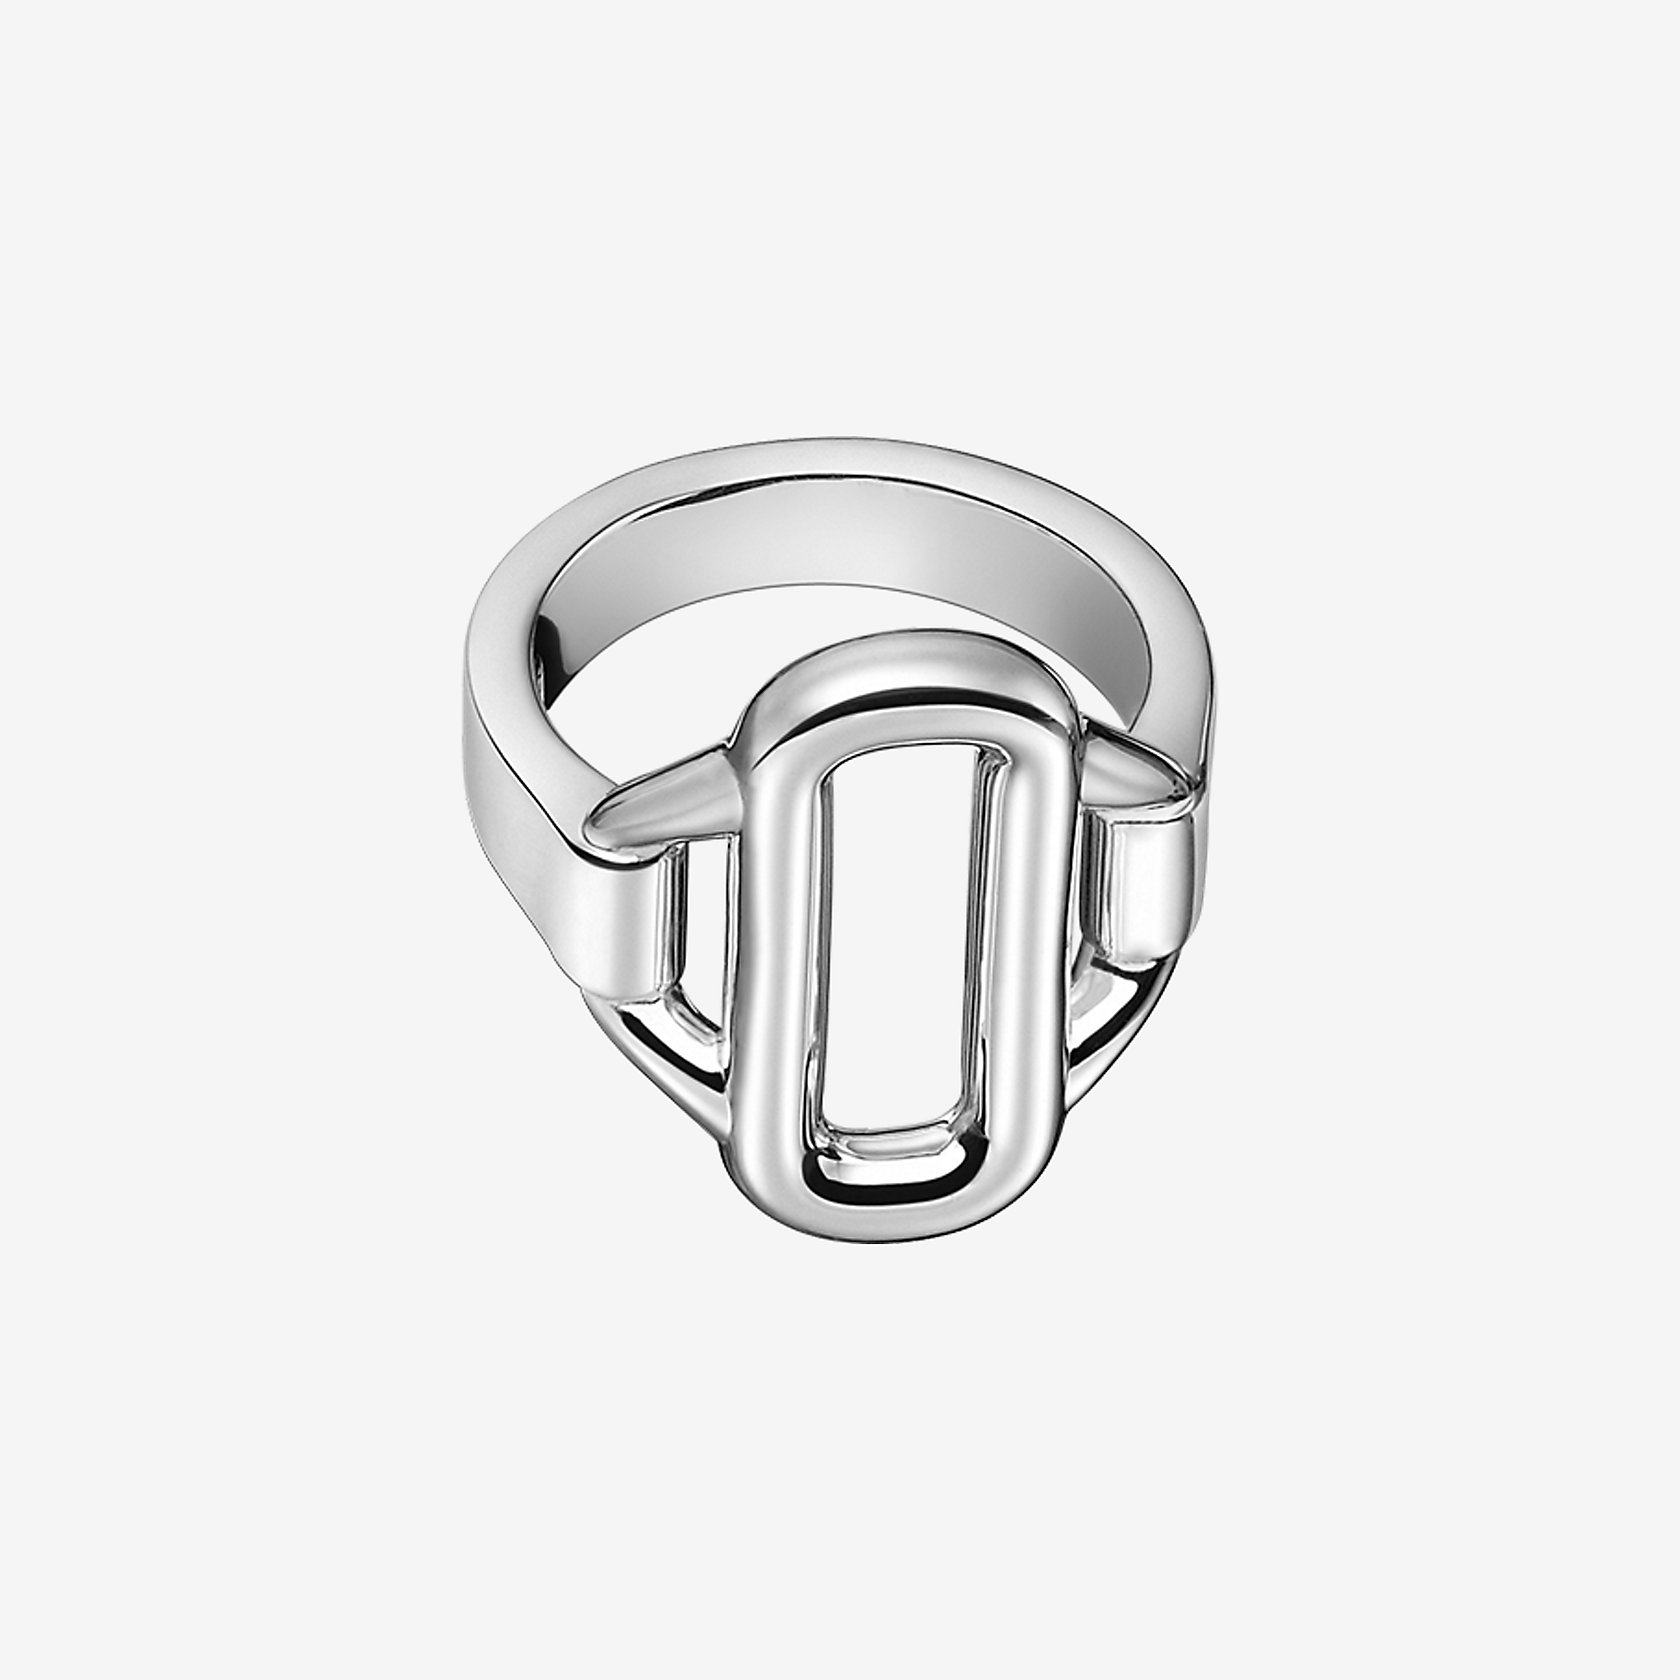 Attelage Hermes ring, medium model | Hermès